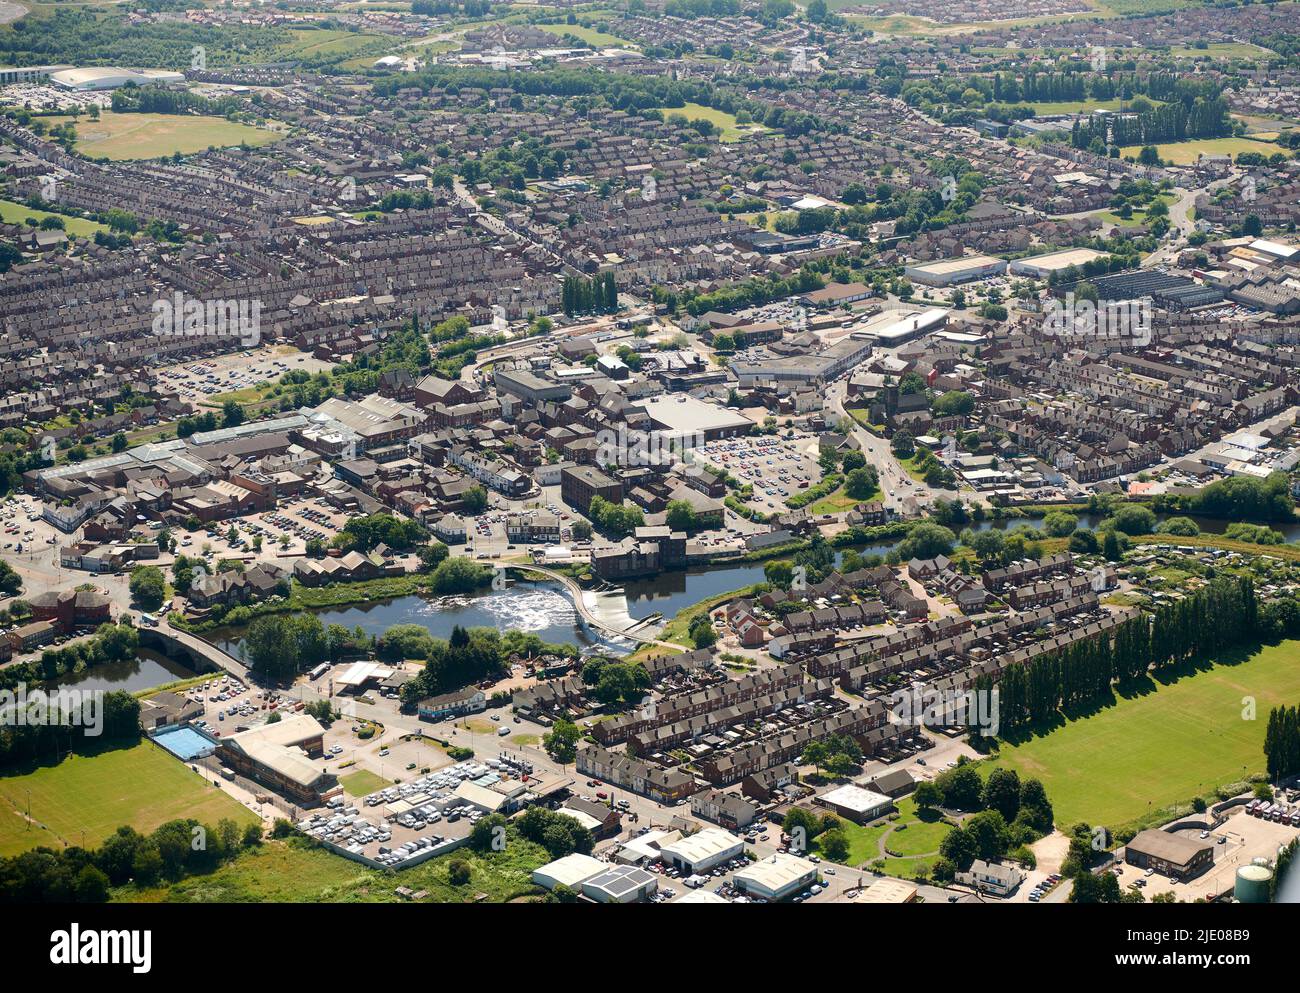 Eine Luftaufnahme von castleford, West Yorkshire, Nordengland, Großbritannien, zeigt den Fluss Aire und neue Wohnsiedlungen Stockfoto